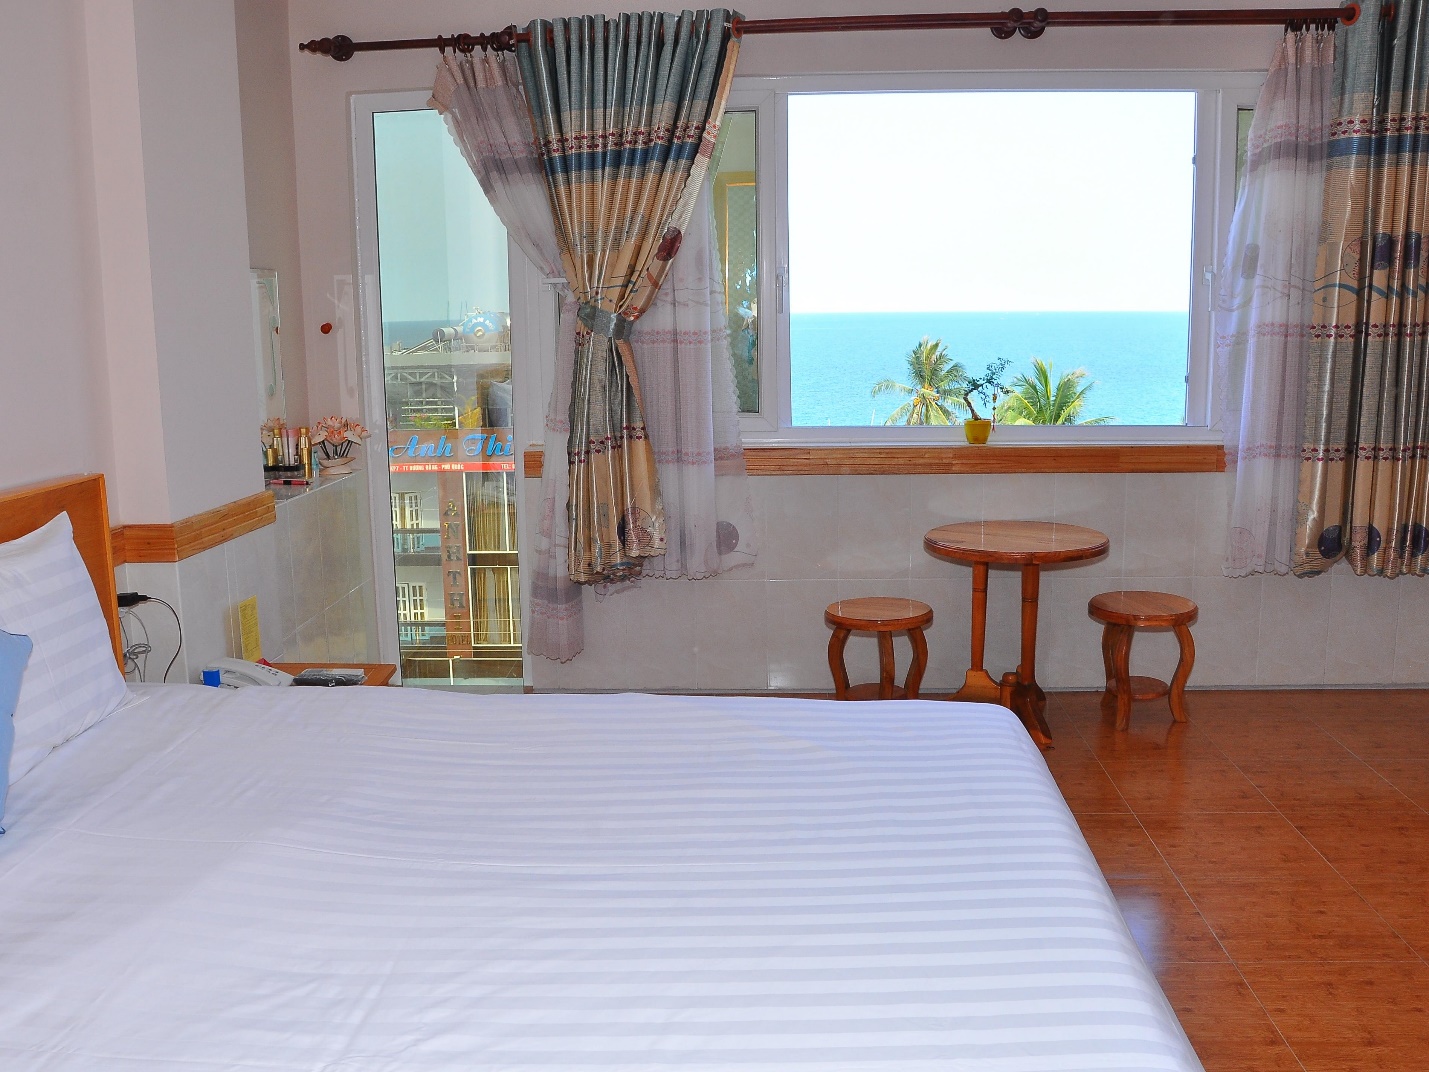 Top 10 khách sạn 2 sao Phú Quốc giá rẻ, gần biển, chợ đêm tốt nhất